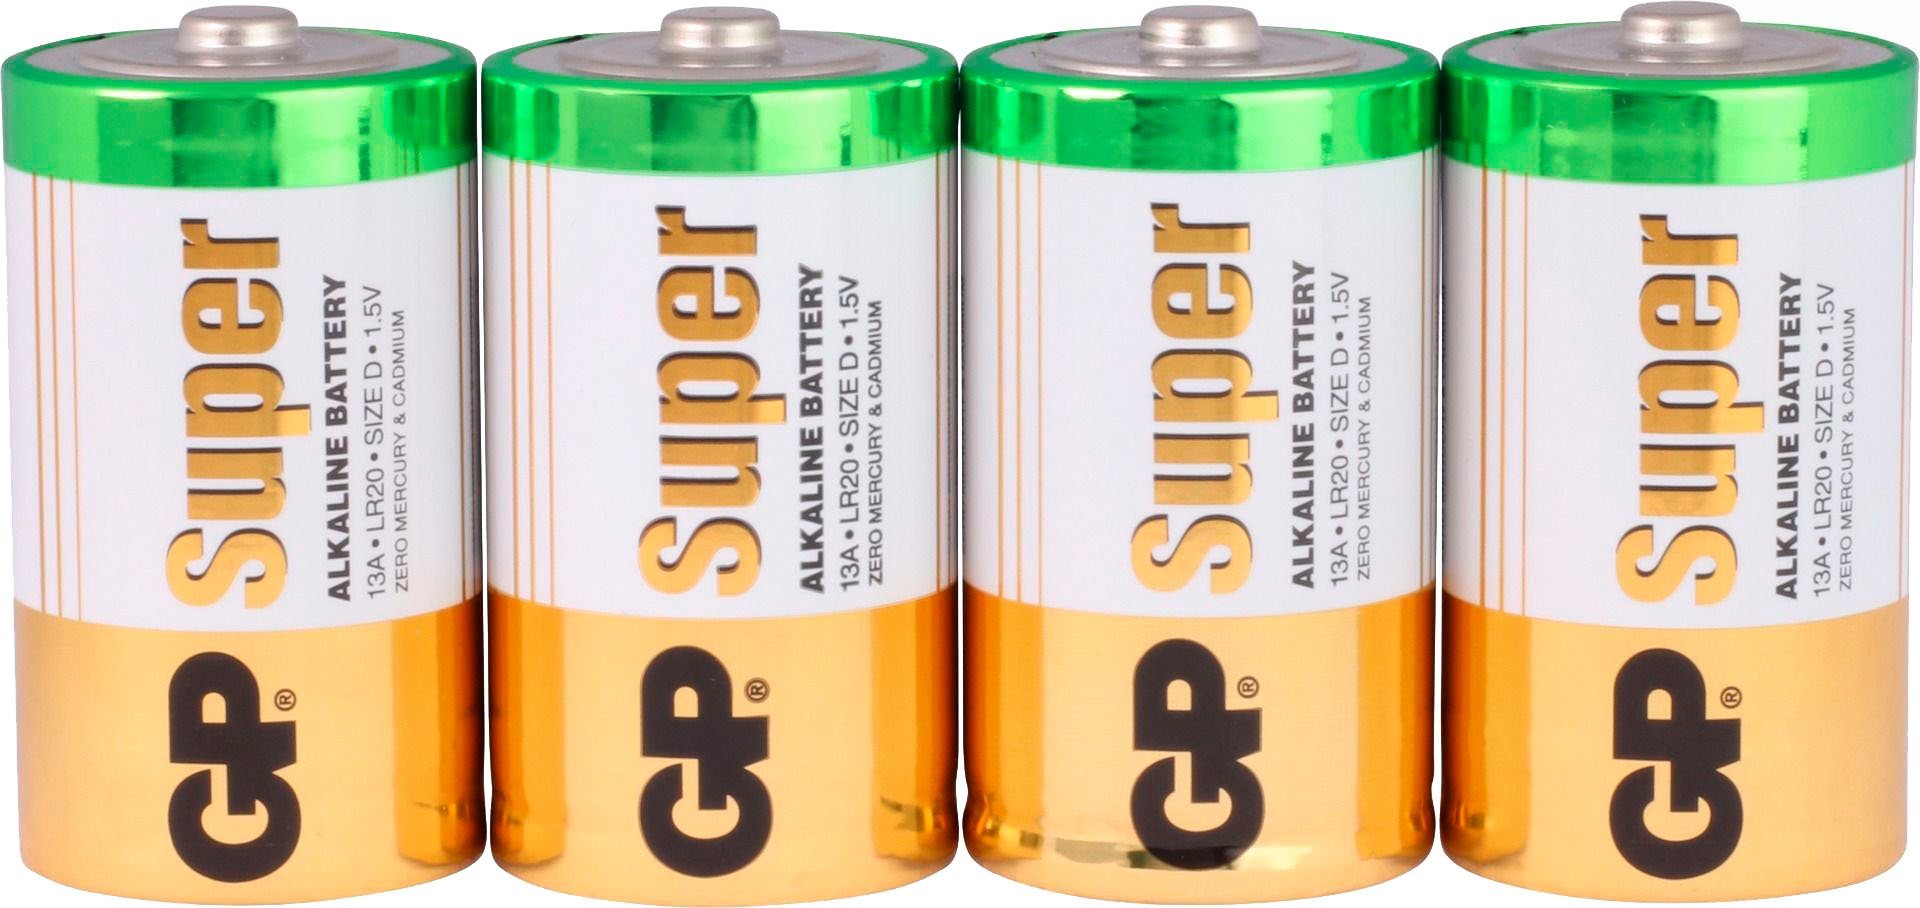 Batteries 4 Alkaline LR20 Super (1,5 GP Batterie, D V, St)